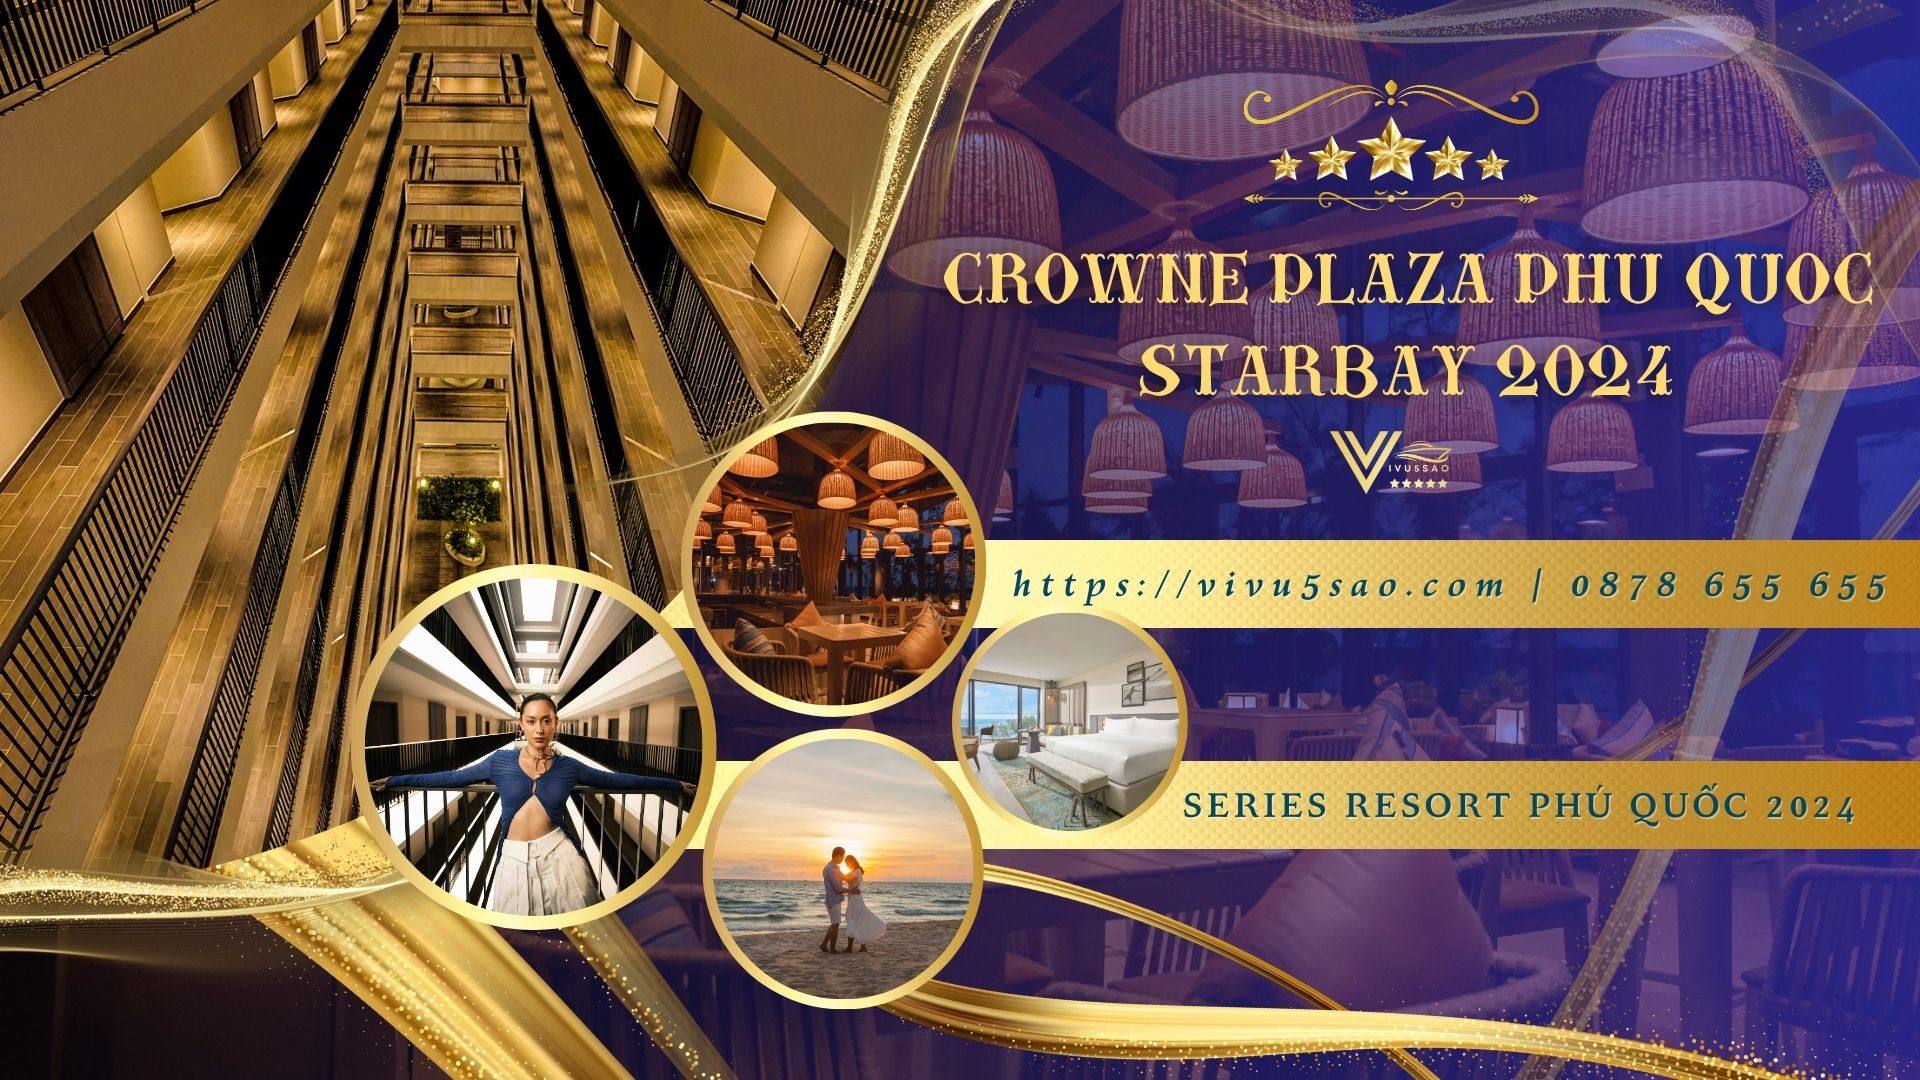 Khám Phá Khu Nghỉ Dưỡng Crowne Plaza Phú Quốc Starbay Năm 2024